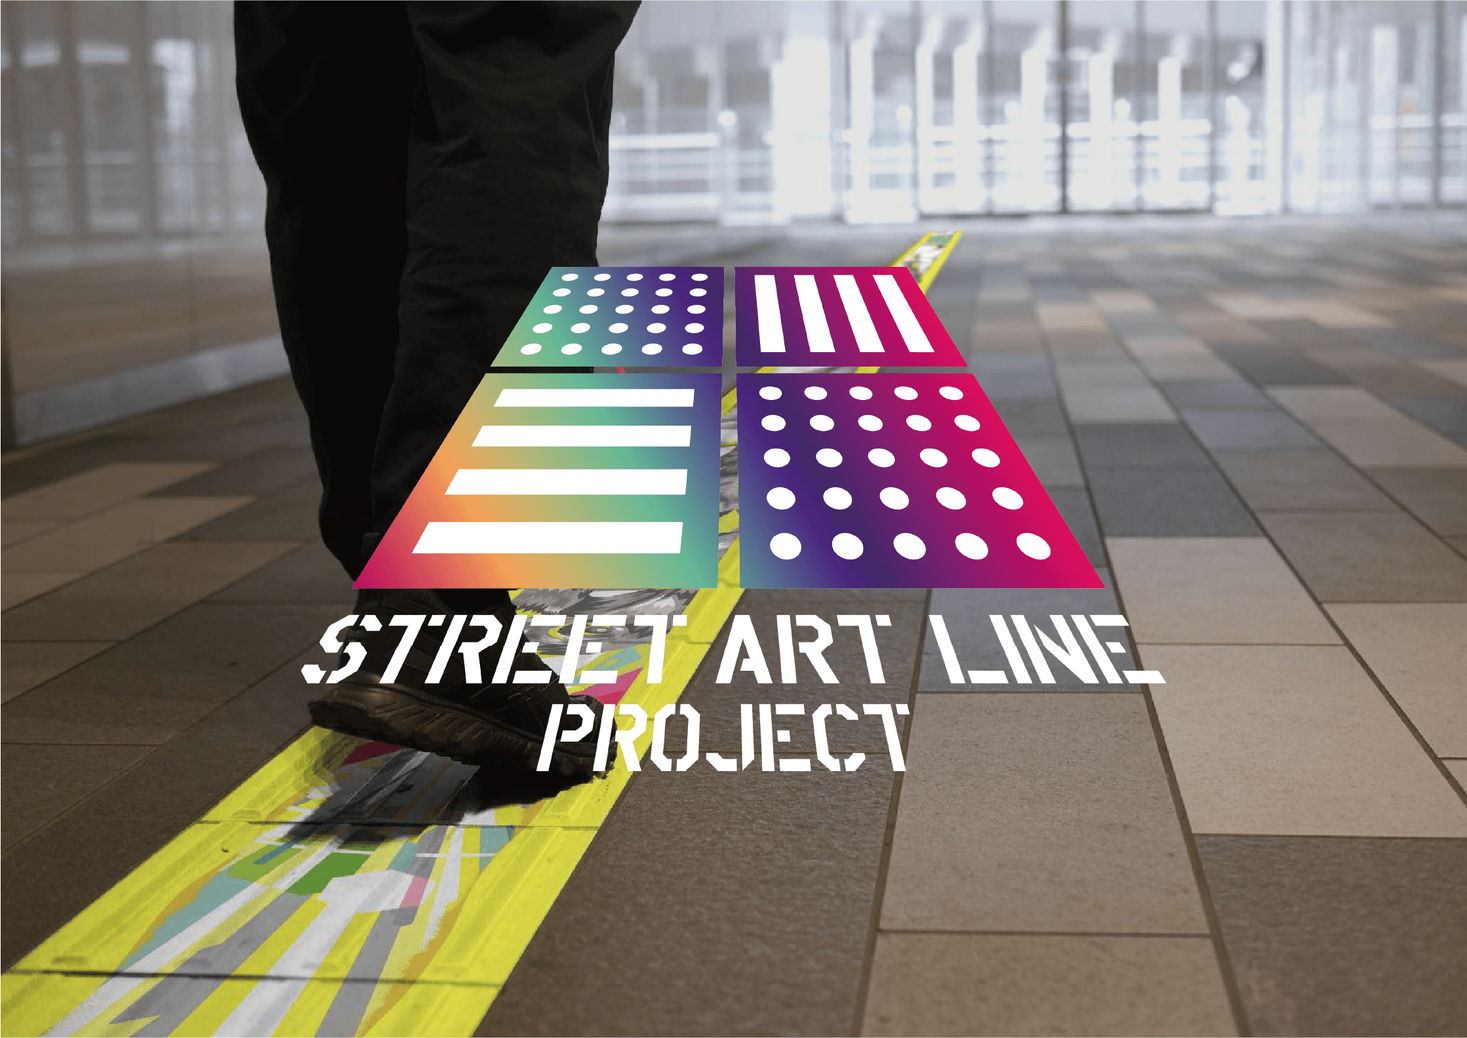 点字ブロックで道をつなごう アートで視覚障碍者の新たな道をつくる Street Art Line Project を開始 Hytekのプレスリリース